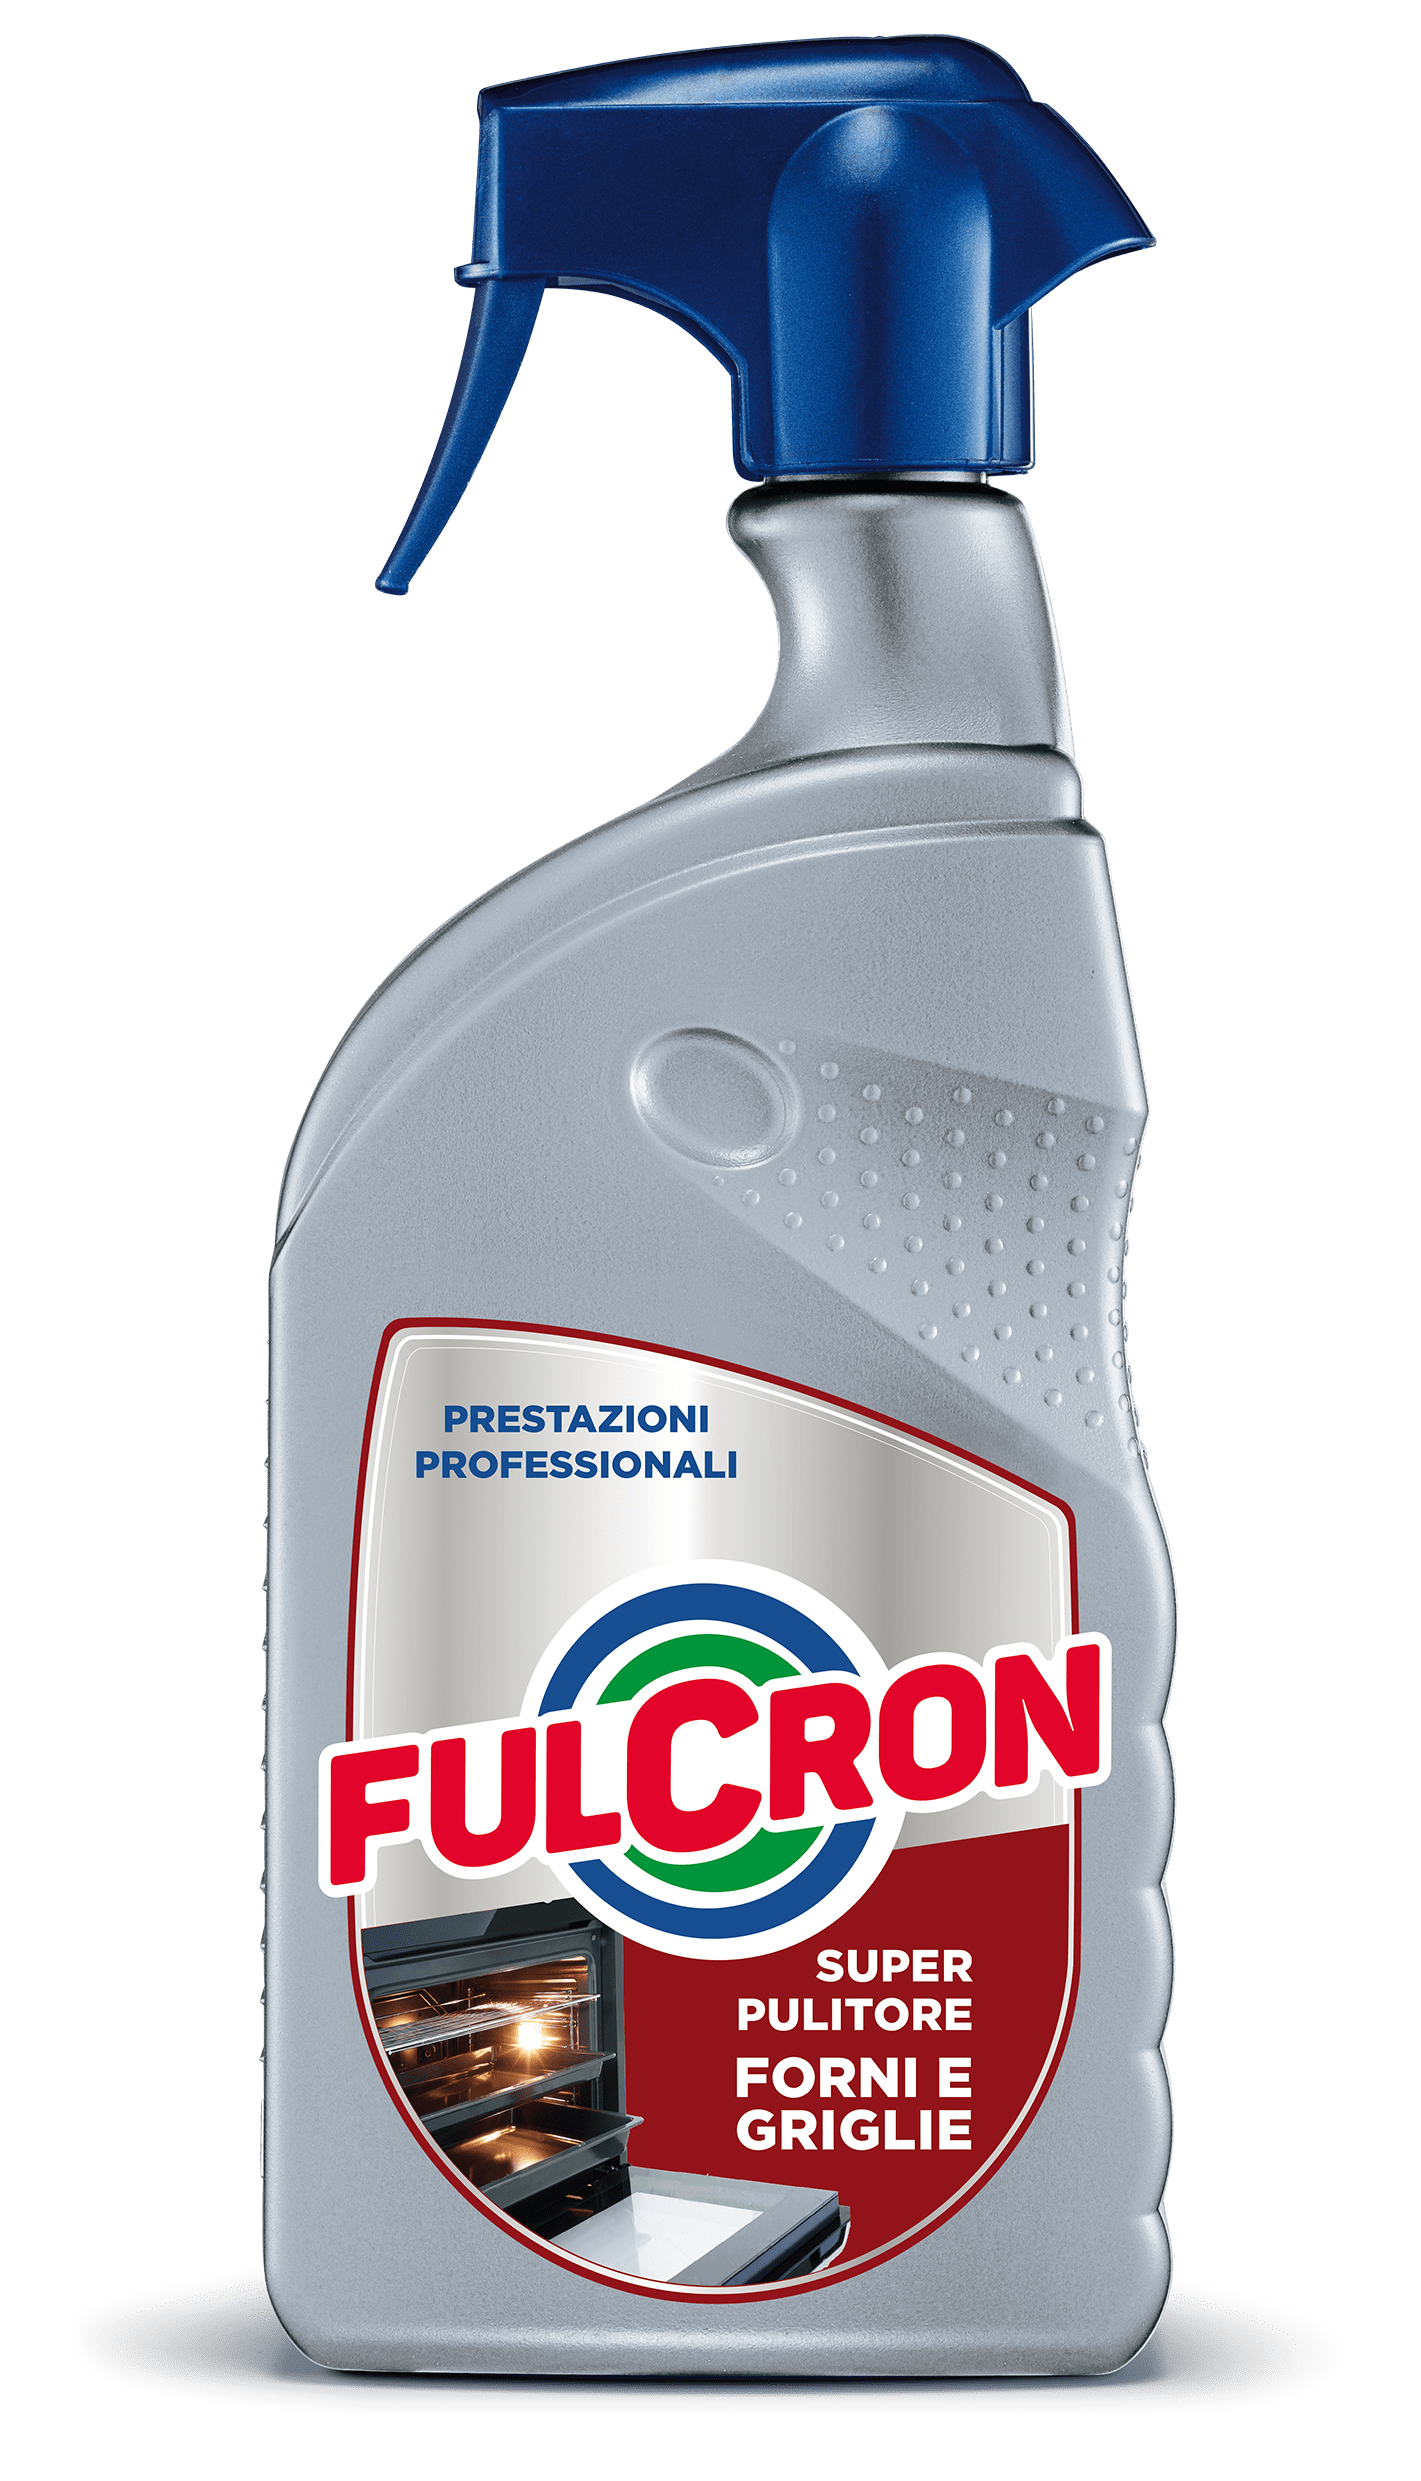 Fulcron, super sgrassatore - Manutenzione - Video - Arexons